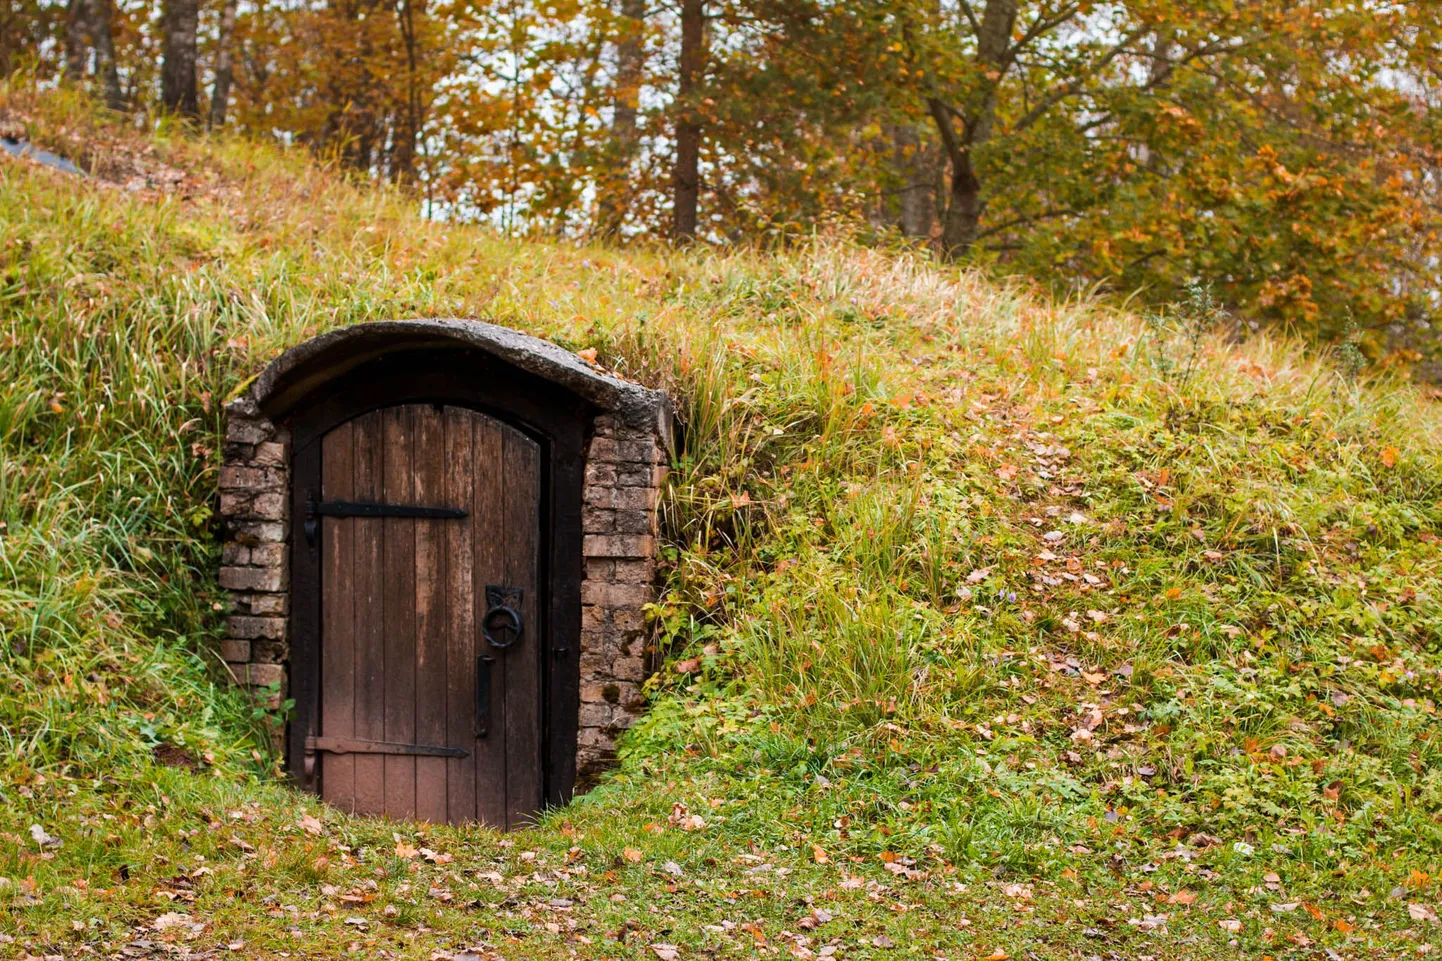 Allikukivi ürgoru maastikku ilmestavad koopad, millest suurima sissekäiku kaitseb uks.